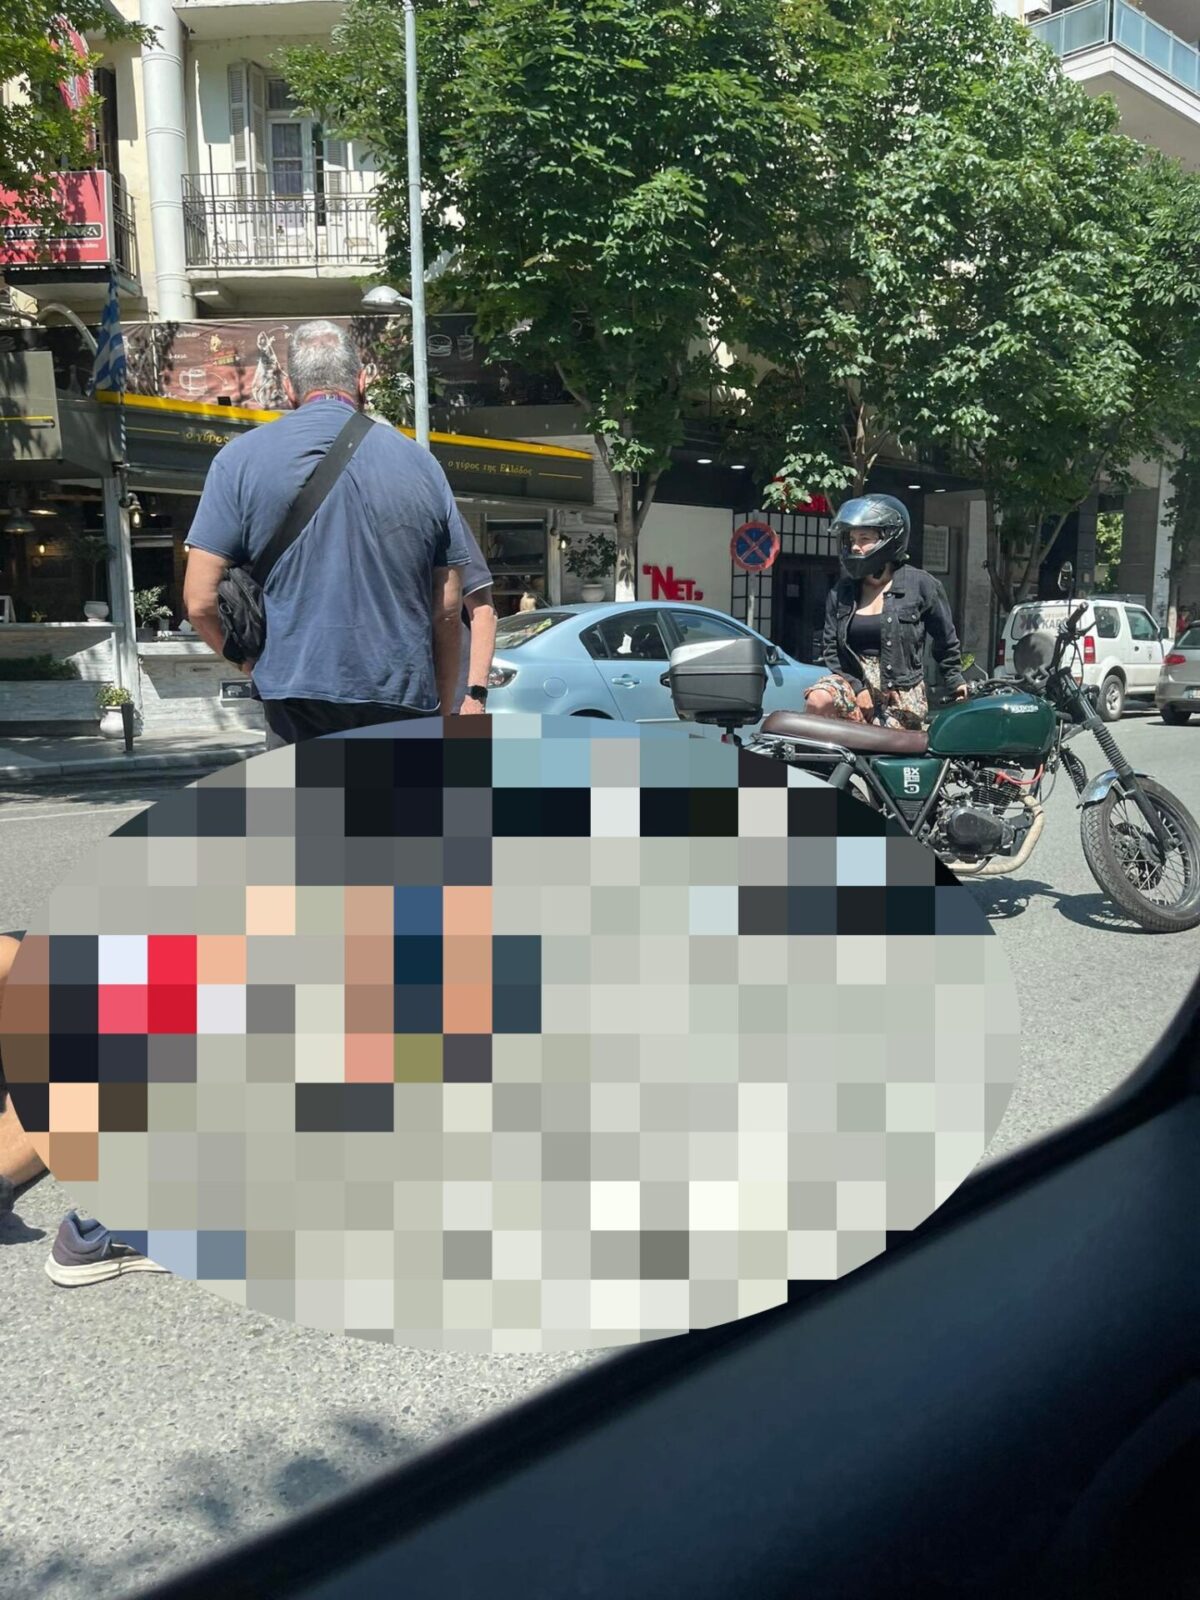 Τροχαίο με μοτοσυκλετιστή στην Ανατολική Θεσσαλονίκη (Photo)